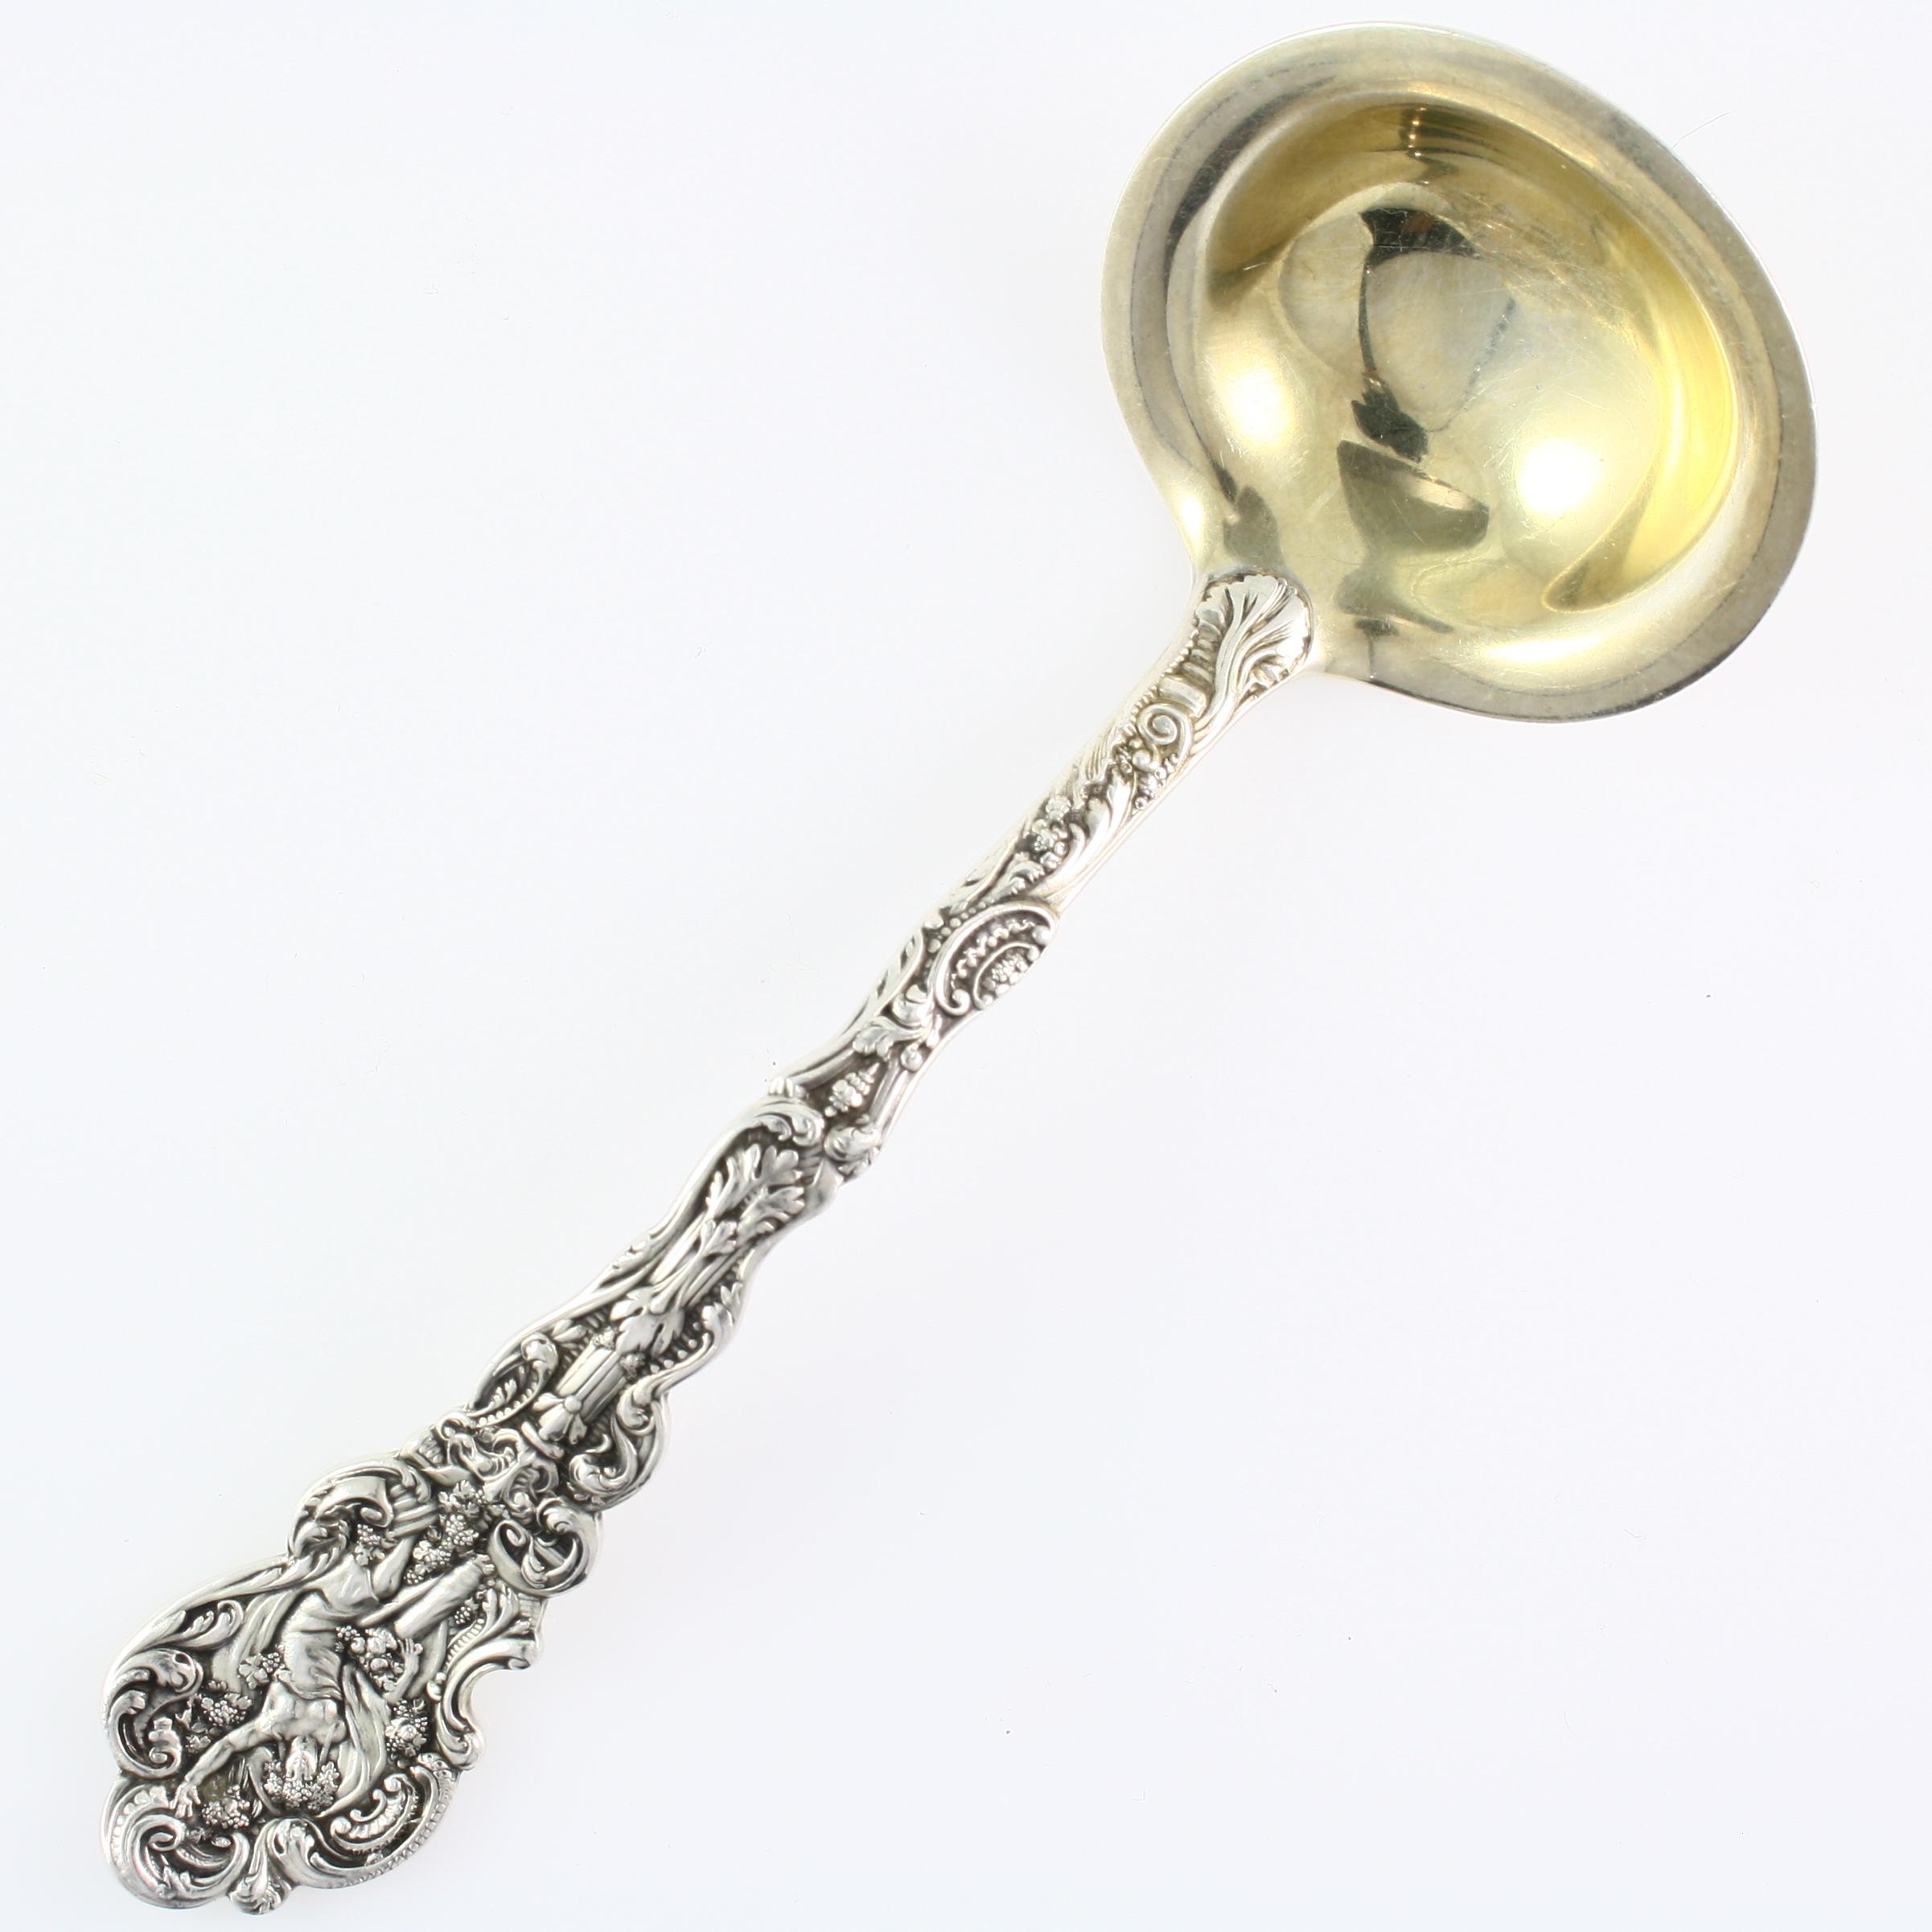 Antique Art Nouveau gilt sterling silver ladle